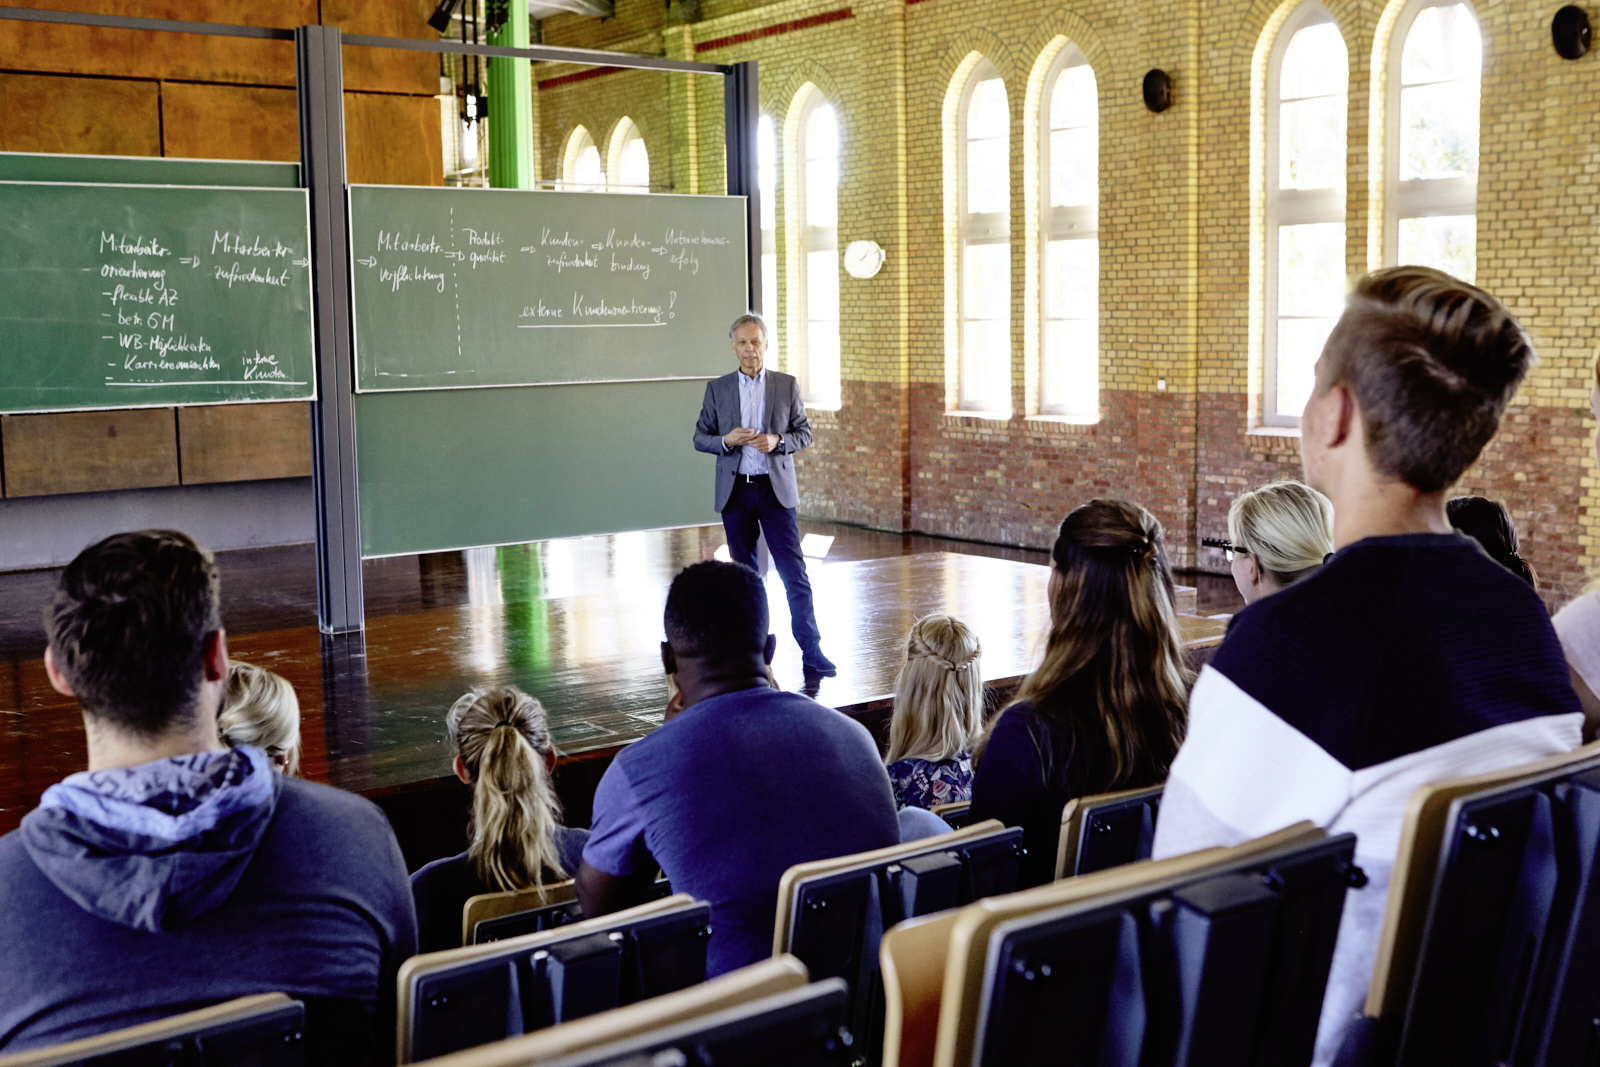 Auf dem Bild ist zu sehen wie ein Professor vor einer Tafel eine Vorlesung hält und die Studierenden ihm zuhören.